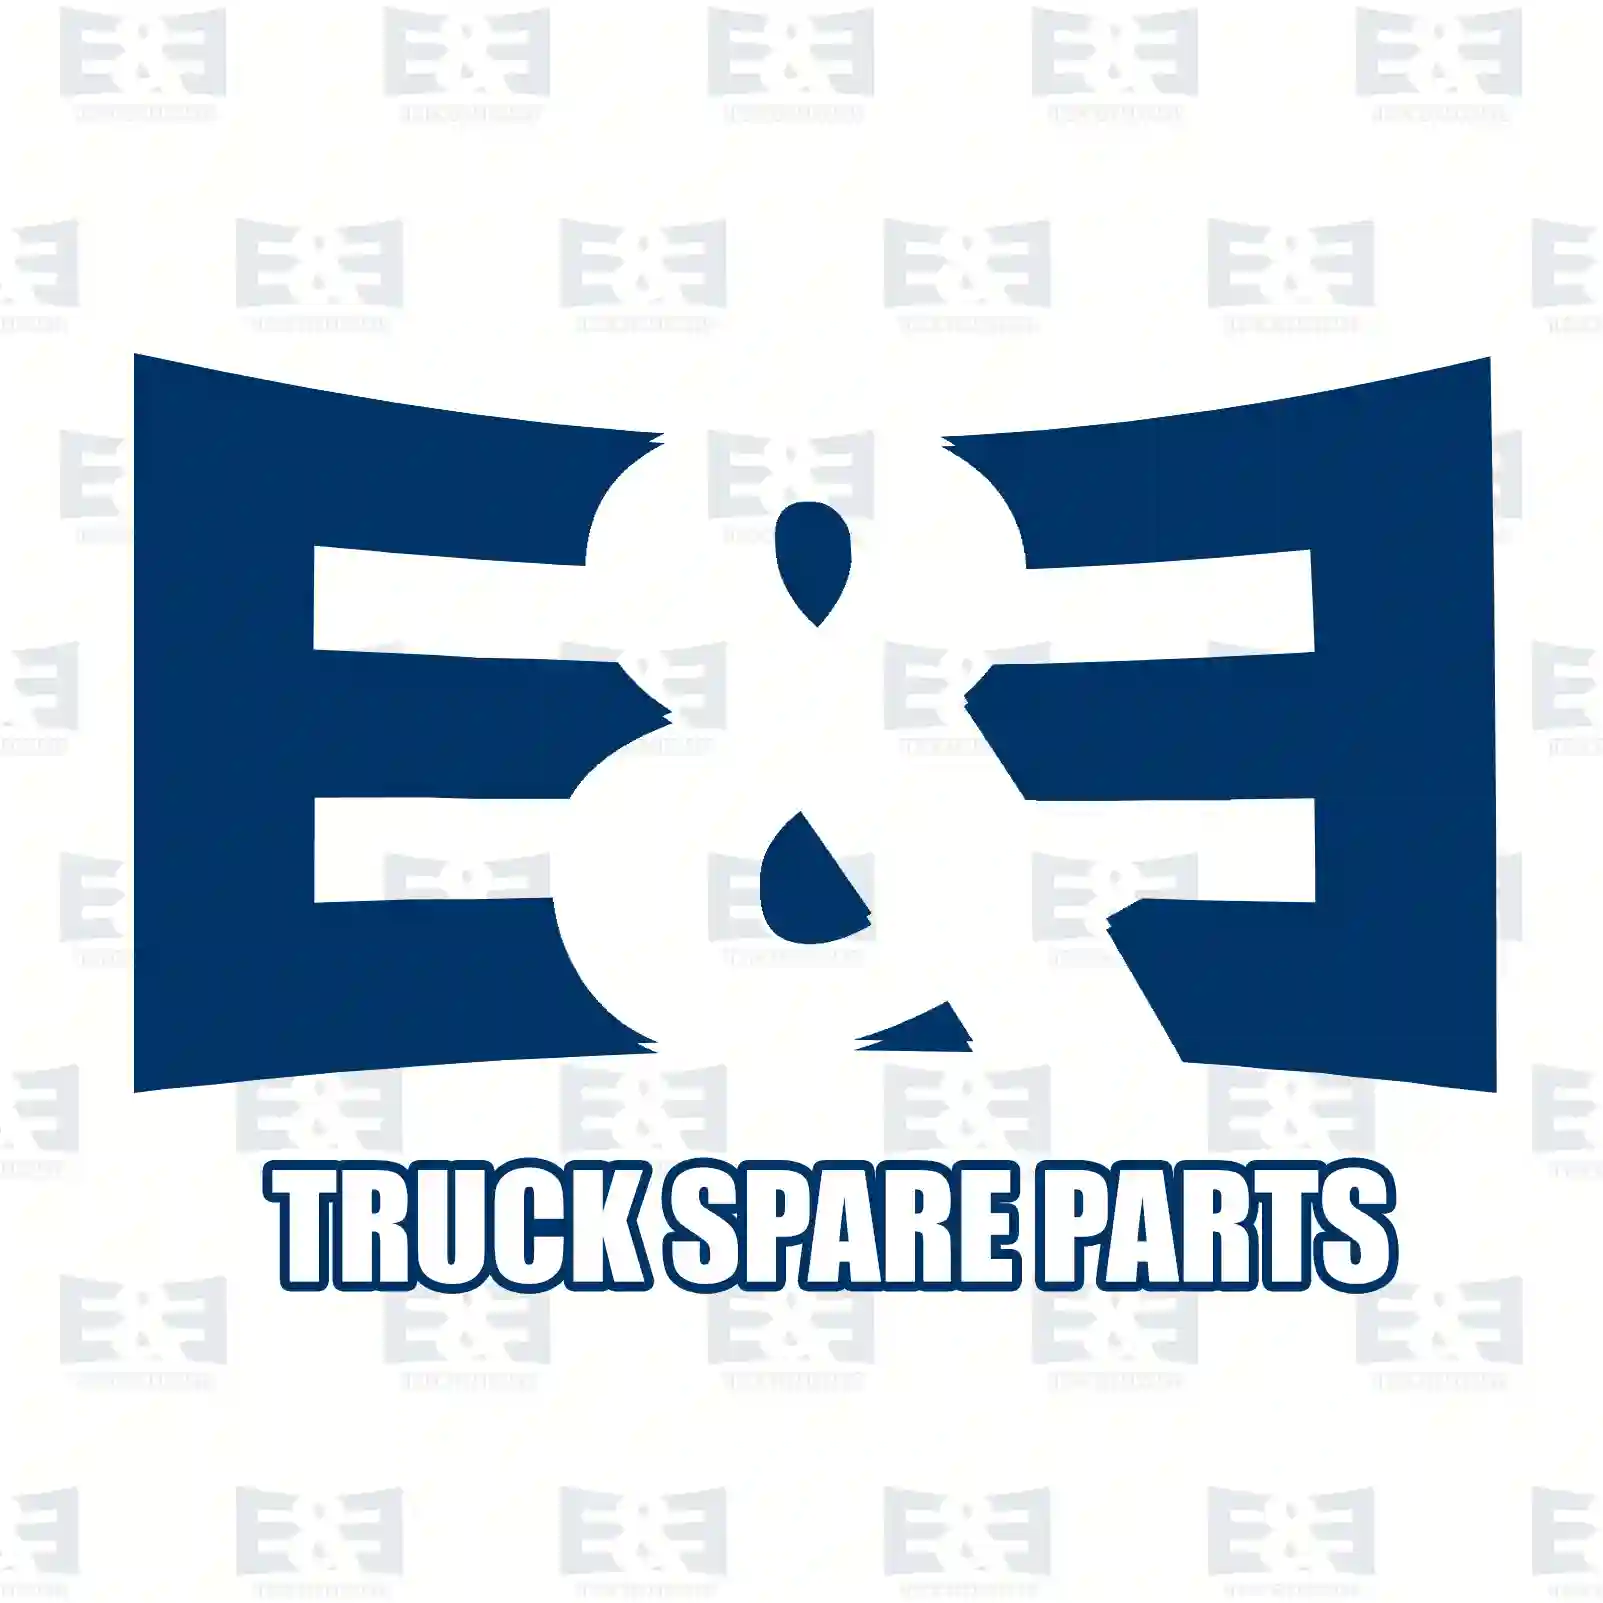 Connecting rod, straight head, 2E2206674, 51024006045, 51024006068, ||  2E2206674 E&E Truck Spare Parts | Truck Spare Parts, Auotomotive Spare Parts Connecting rod, straight head, 2E2206674, 51024006045, 51024006068, ||  2E2206674 E&E Truck Spare Parts | Truck Spare Parts, Auotomotive Spare Parts